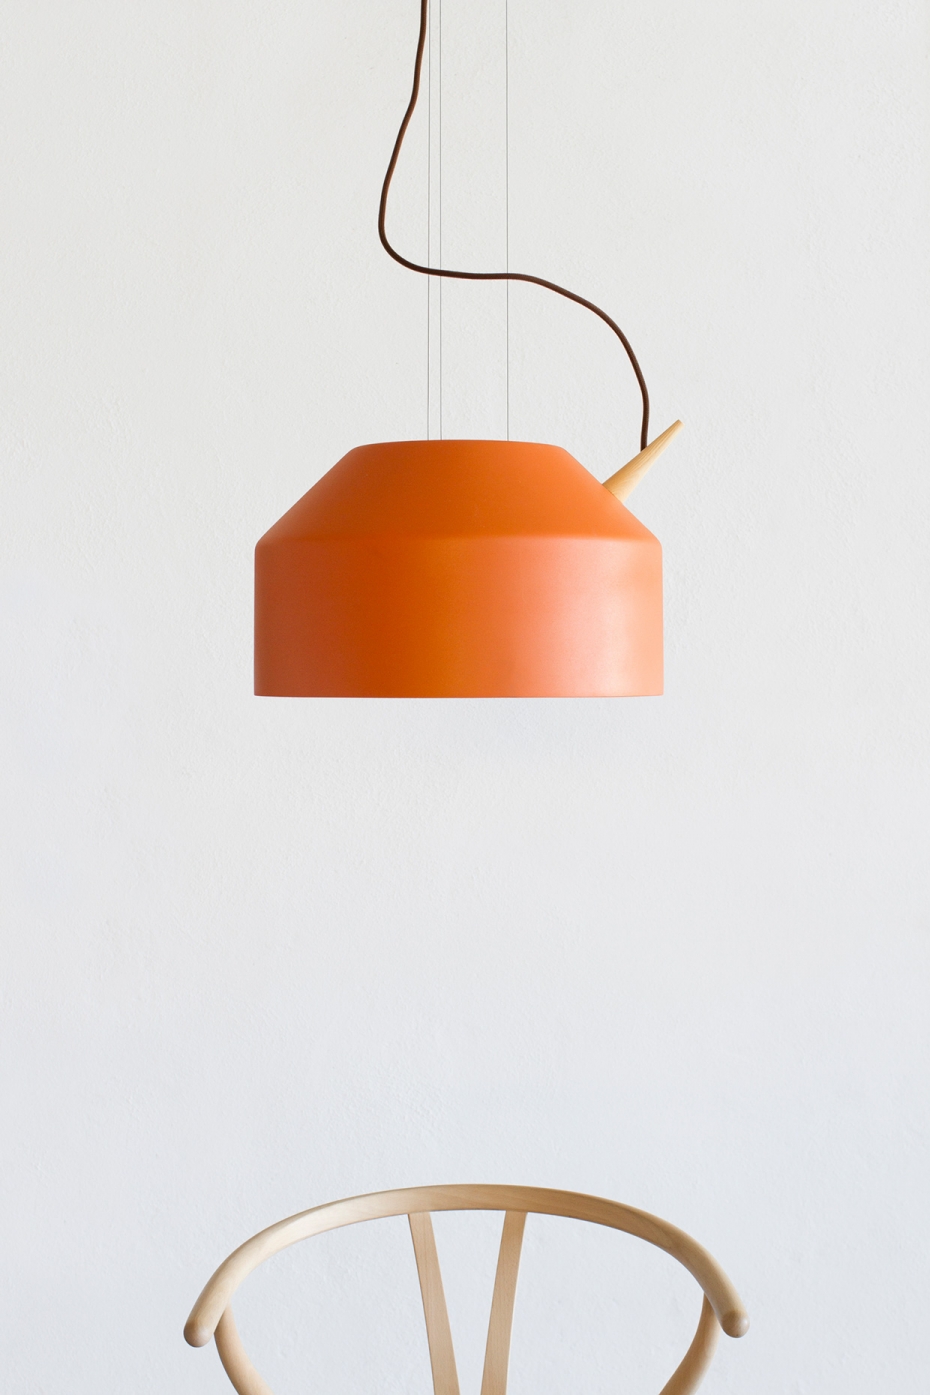 Designerska lampa Reeno w kolorze pomarańczowym.